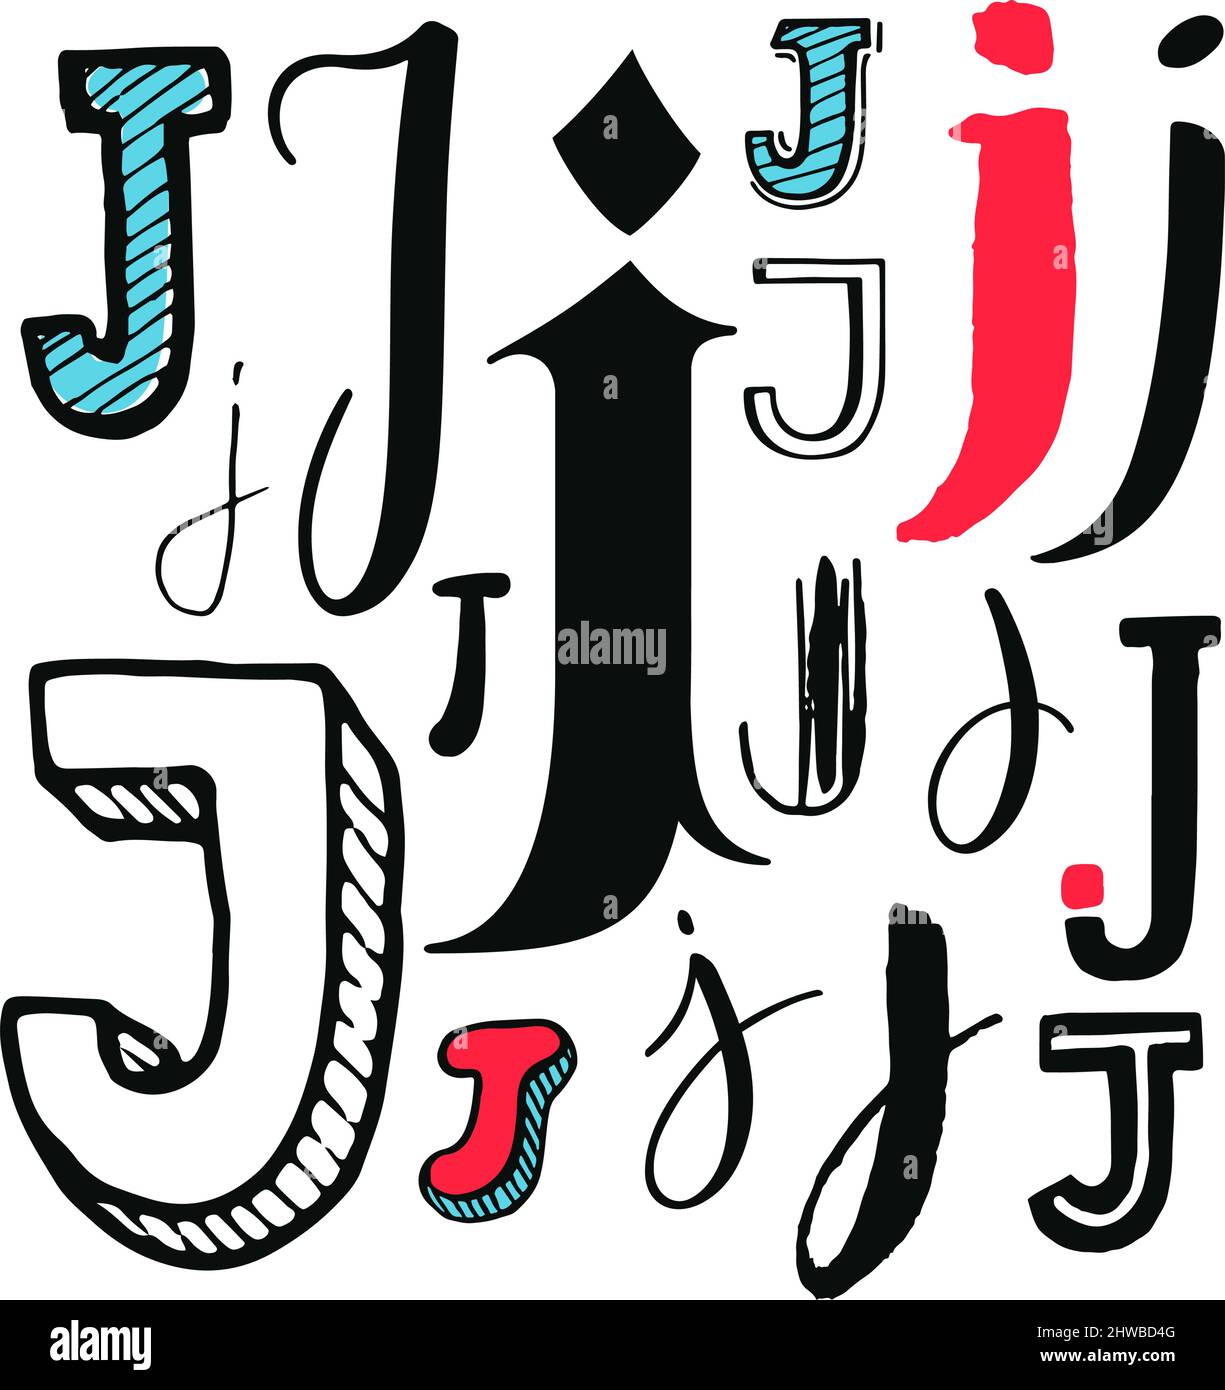 Jeu de lettres J. Différents styles. Illustration dessinée à la main Illustration de Vecteur